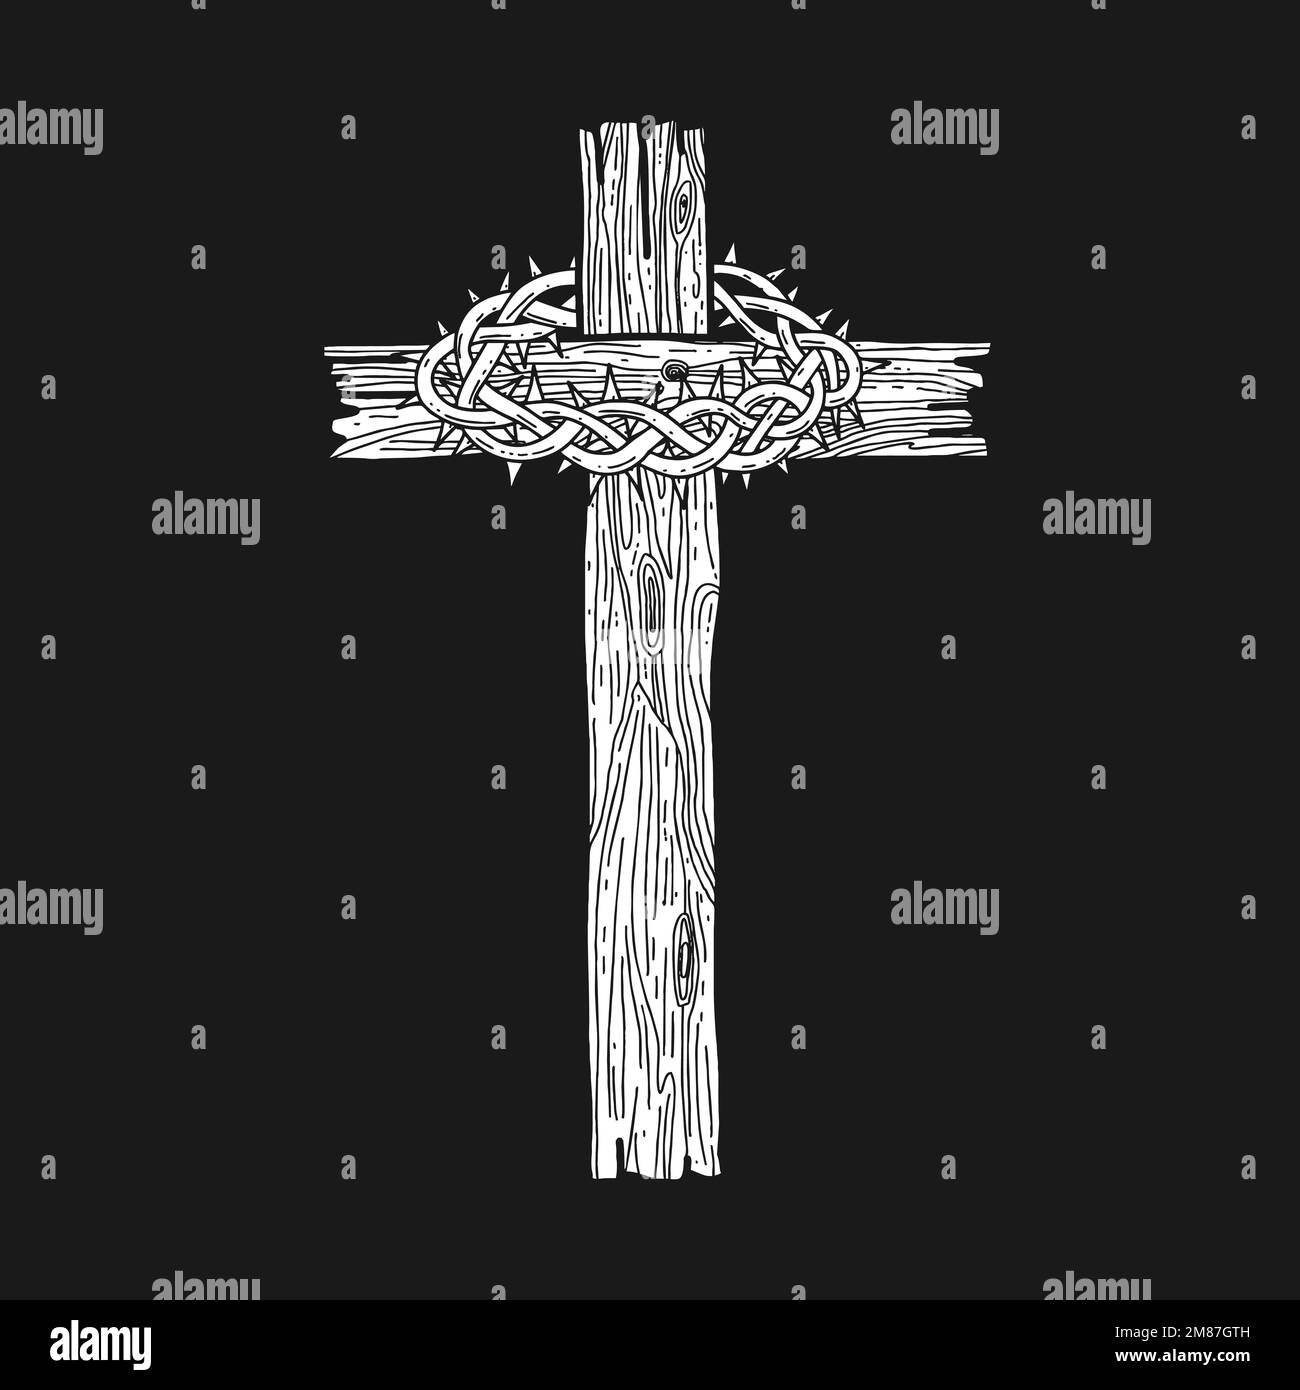 Illustrazione vettoriale disegnata a mano per Pasqua. Una croce di legno con una corona di spine. Simbolo della crocifissione e risurrezione del Signore Gesù Chris Illustrazione Vettoriale